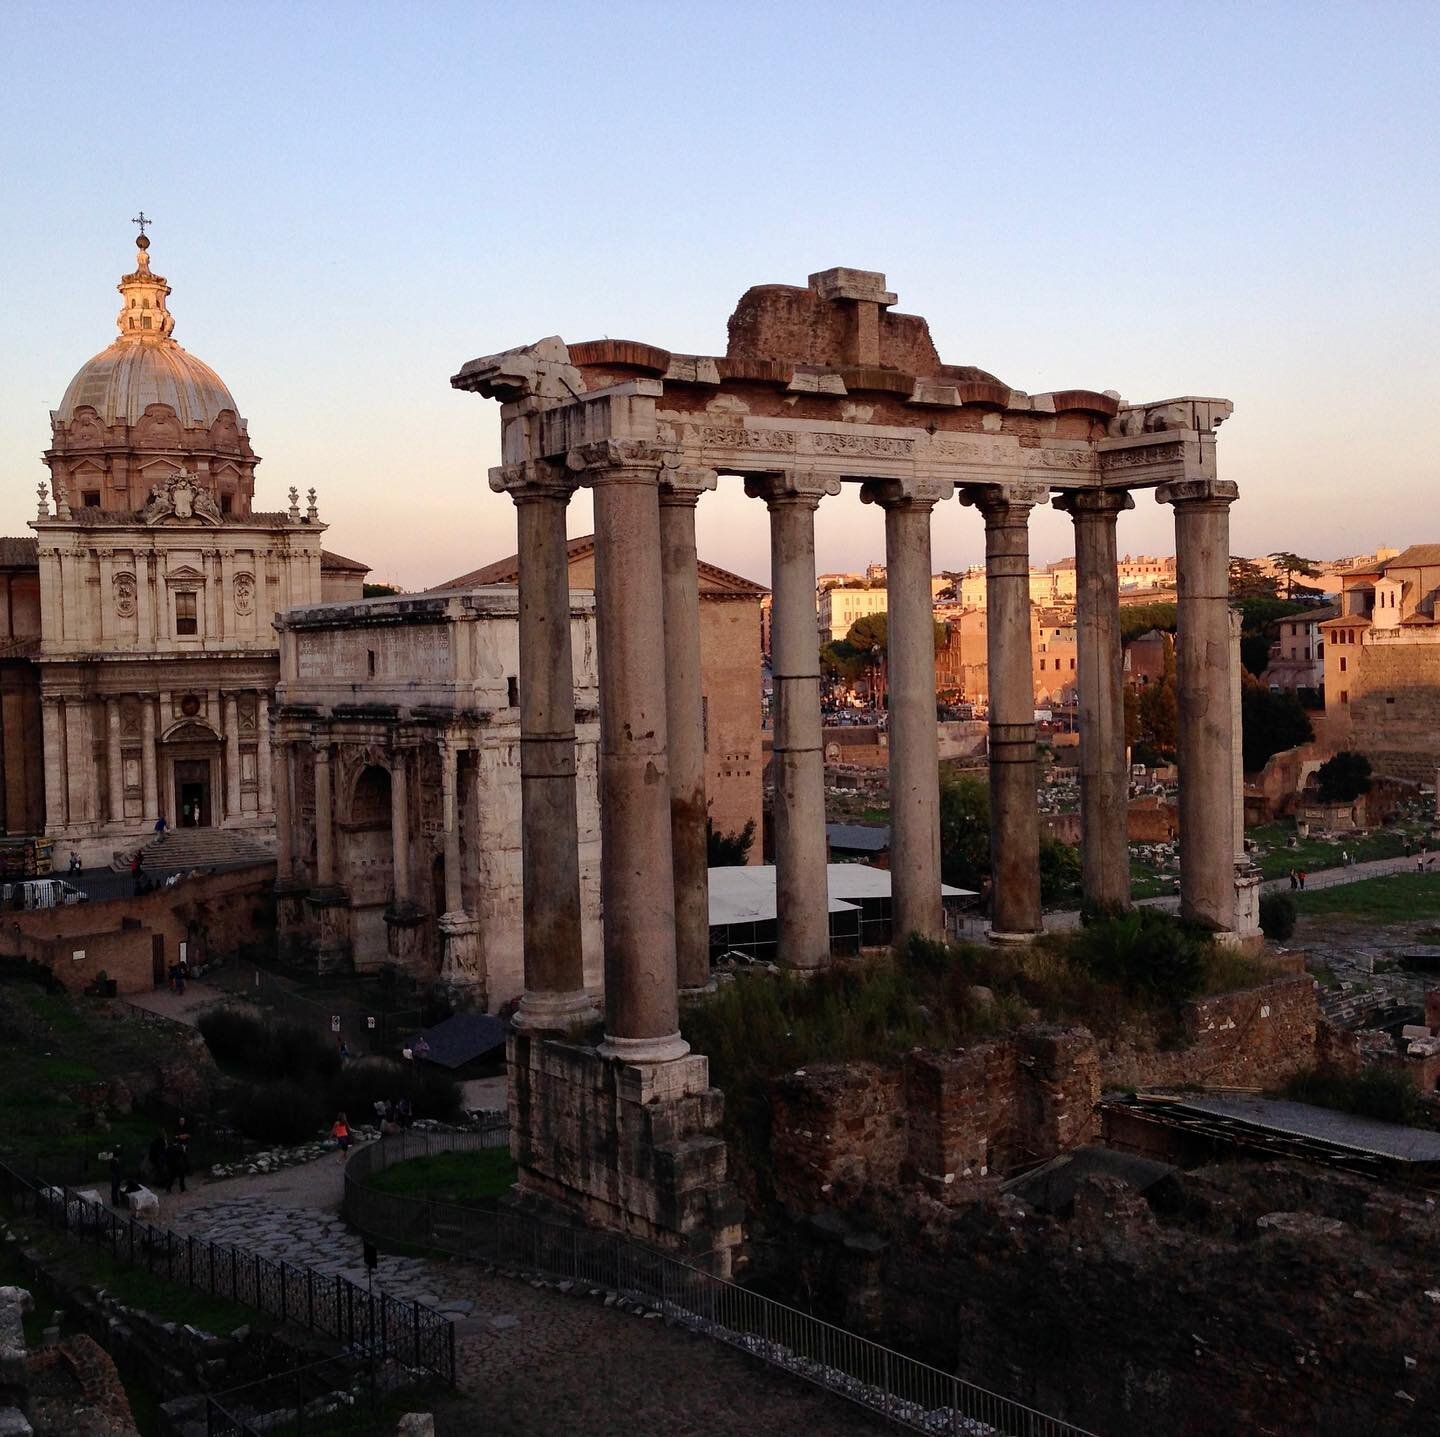 Roman Forum at sunset. 

#tbt #romeitaly #italytravel #italy🇮🇹